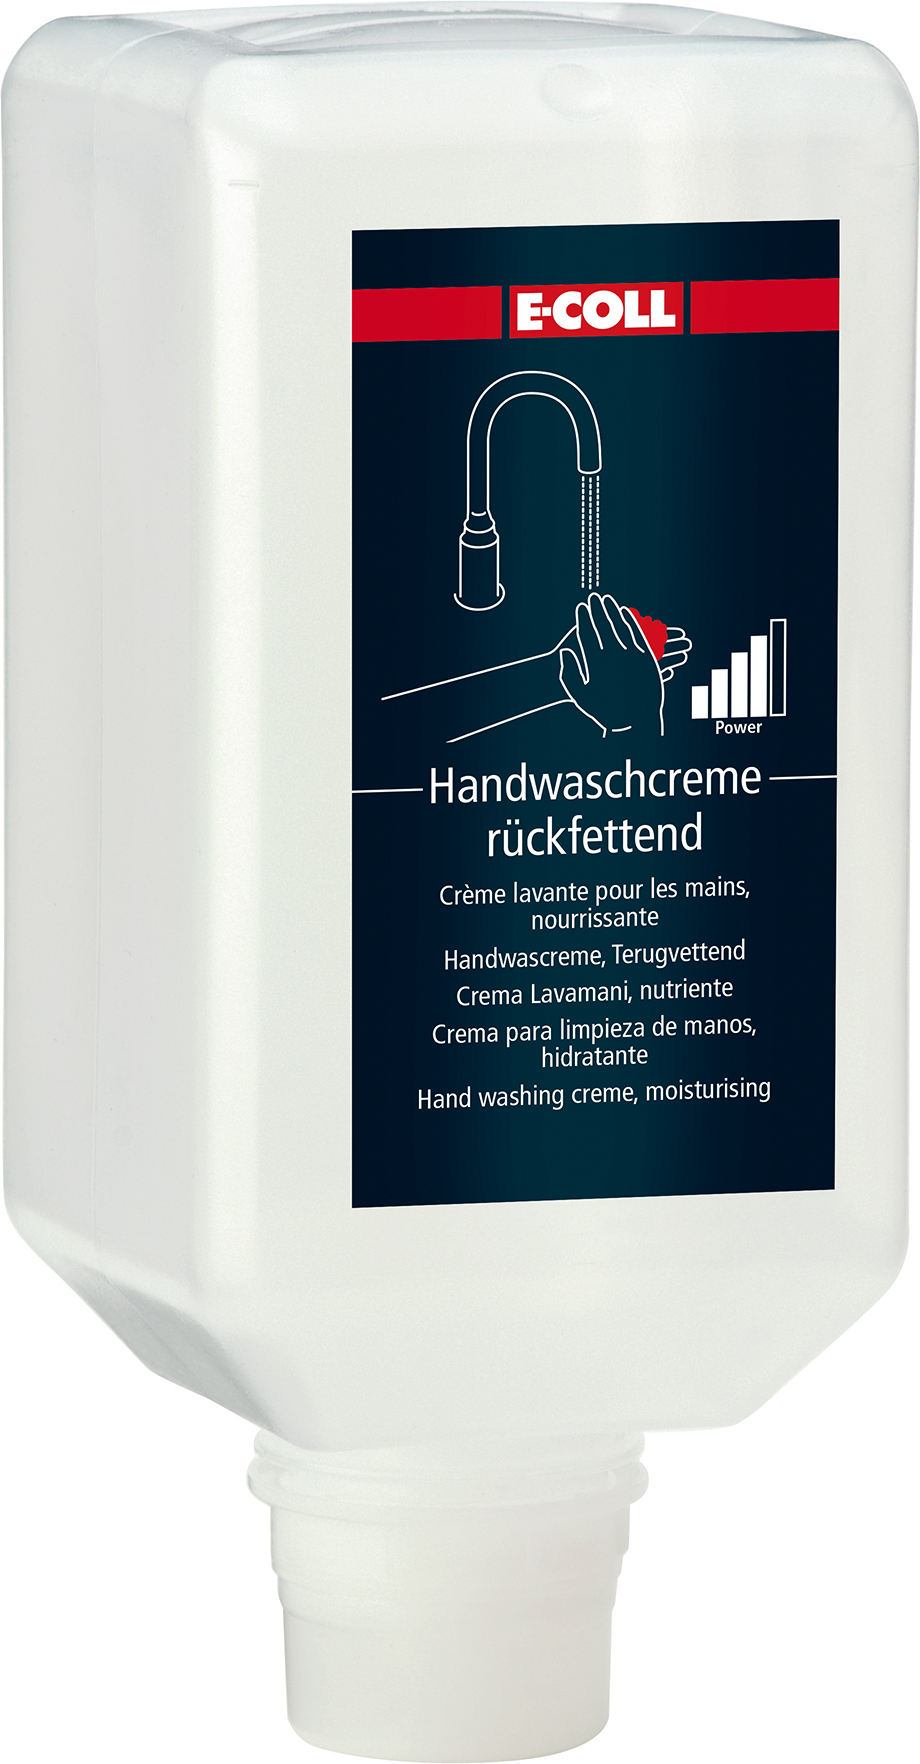 Picture of Handwaschcreme 2L Flasche für V-Spender E-COLL